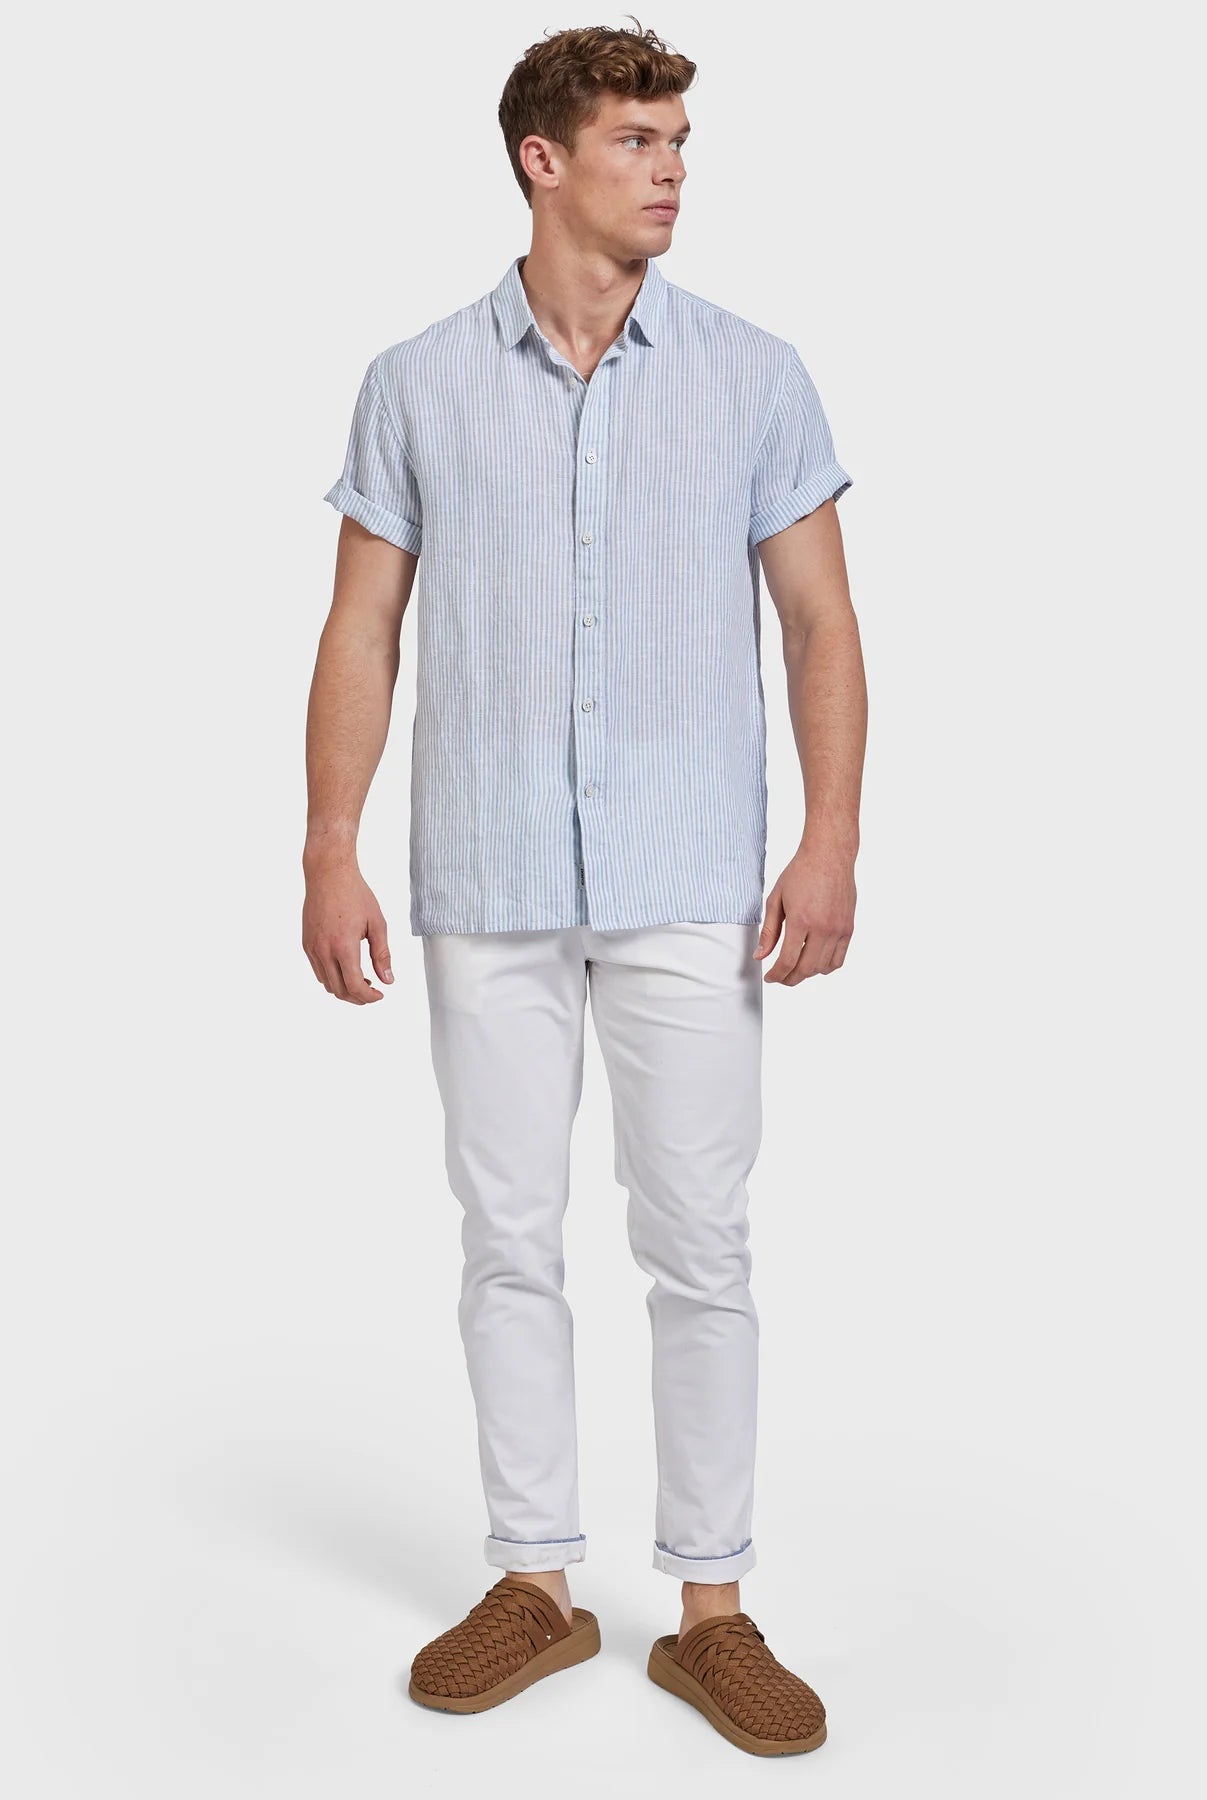 Rory Short Sleeve Linen Shirt in Atlantic Blue